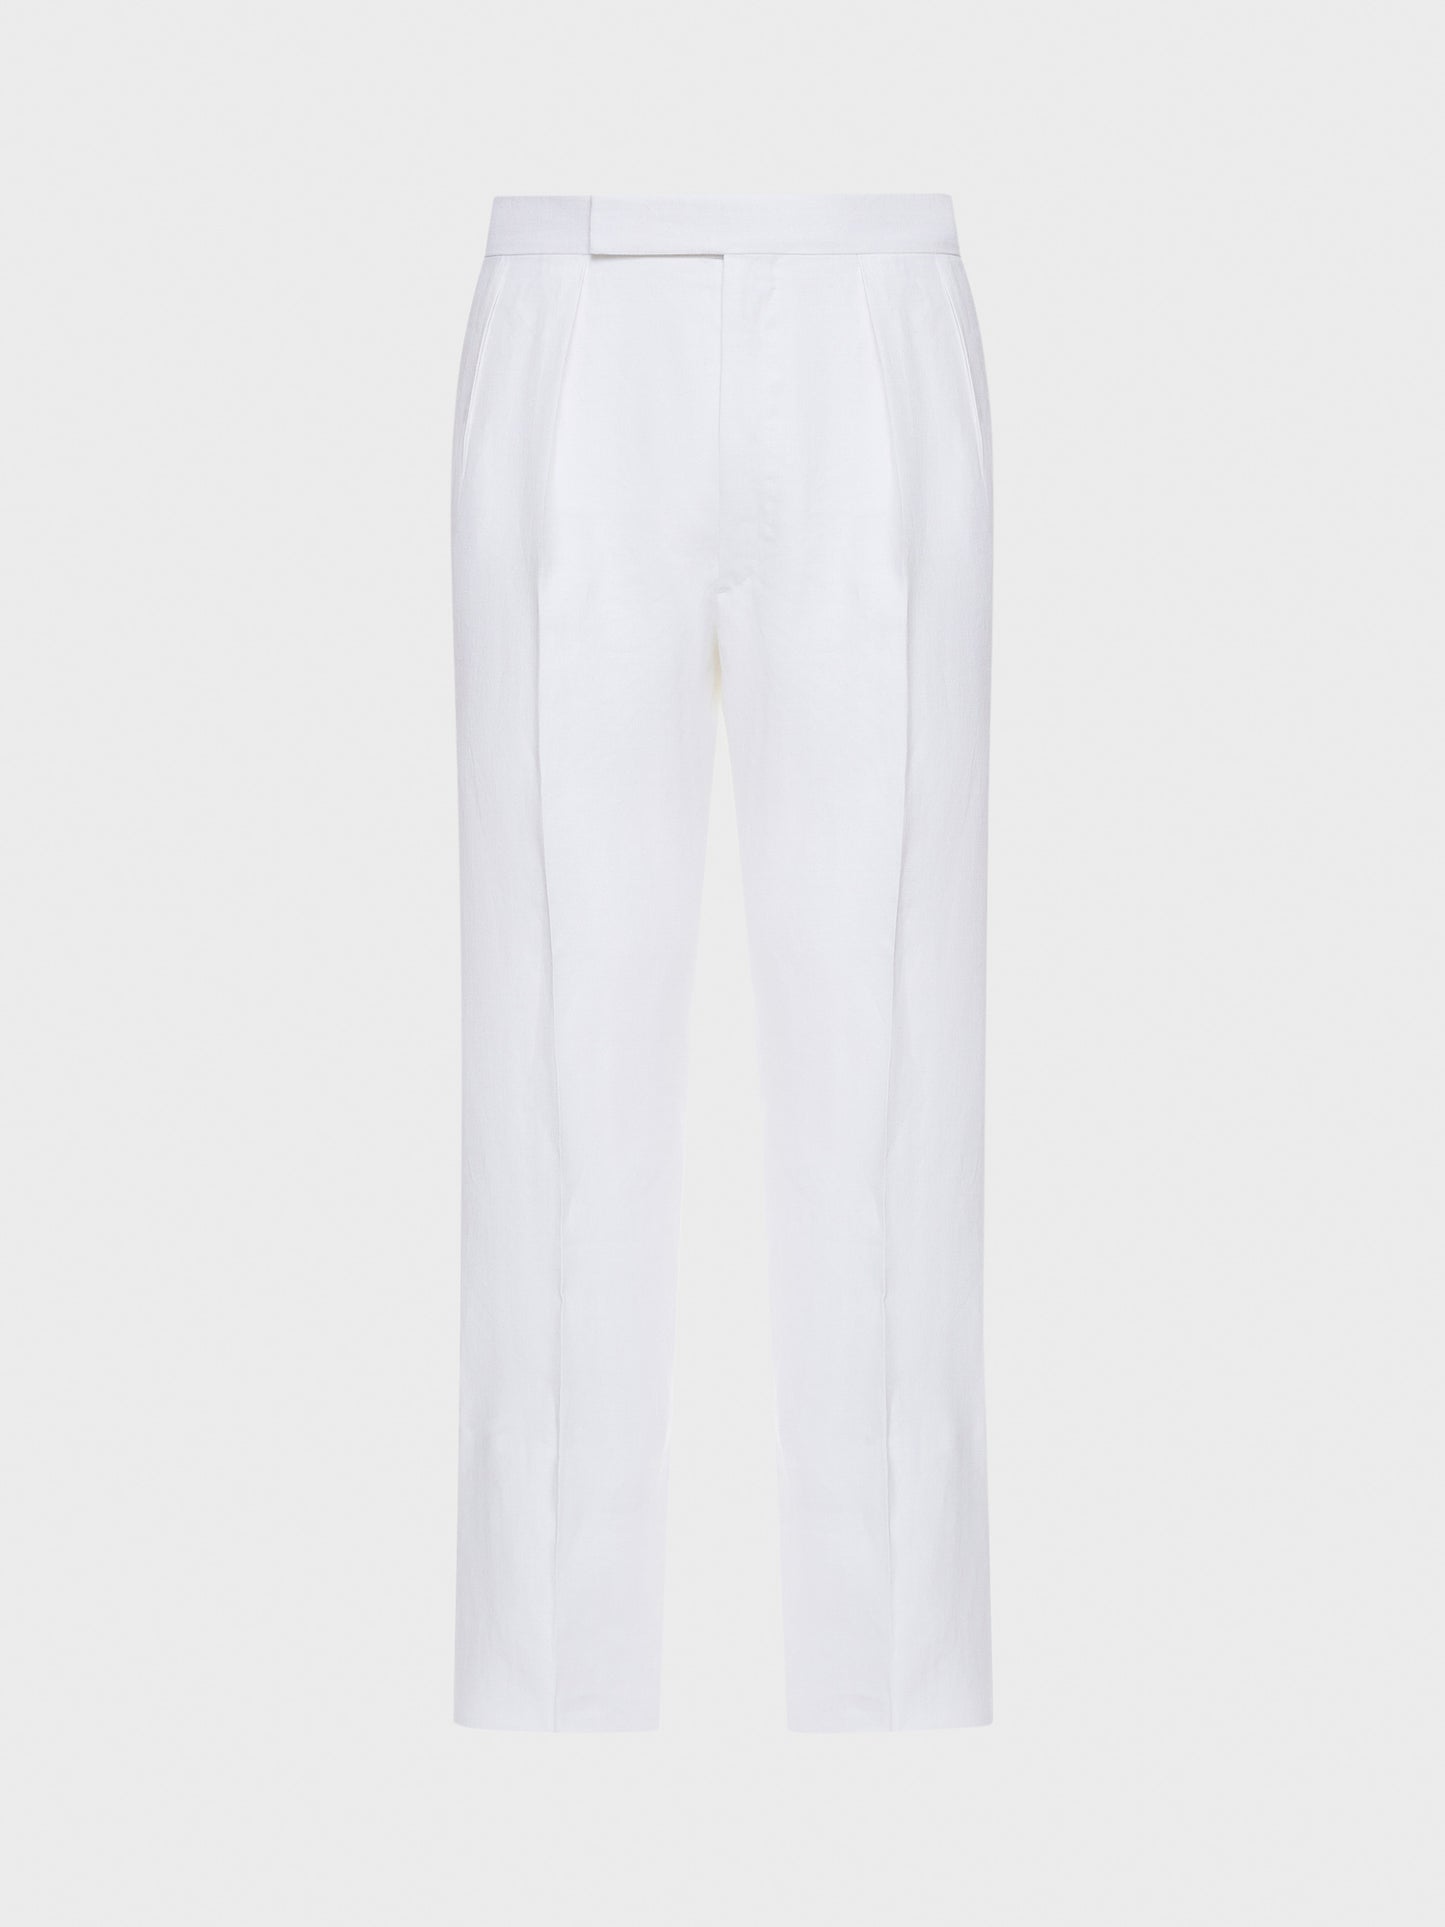 Caruso Menswear Abbigliamento Uomo Pantalone in lino bianco still